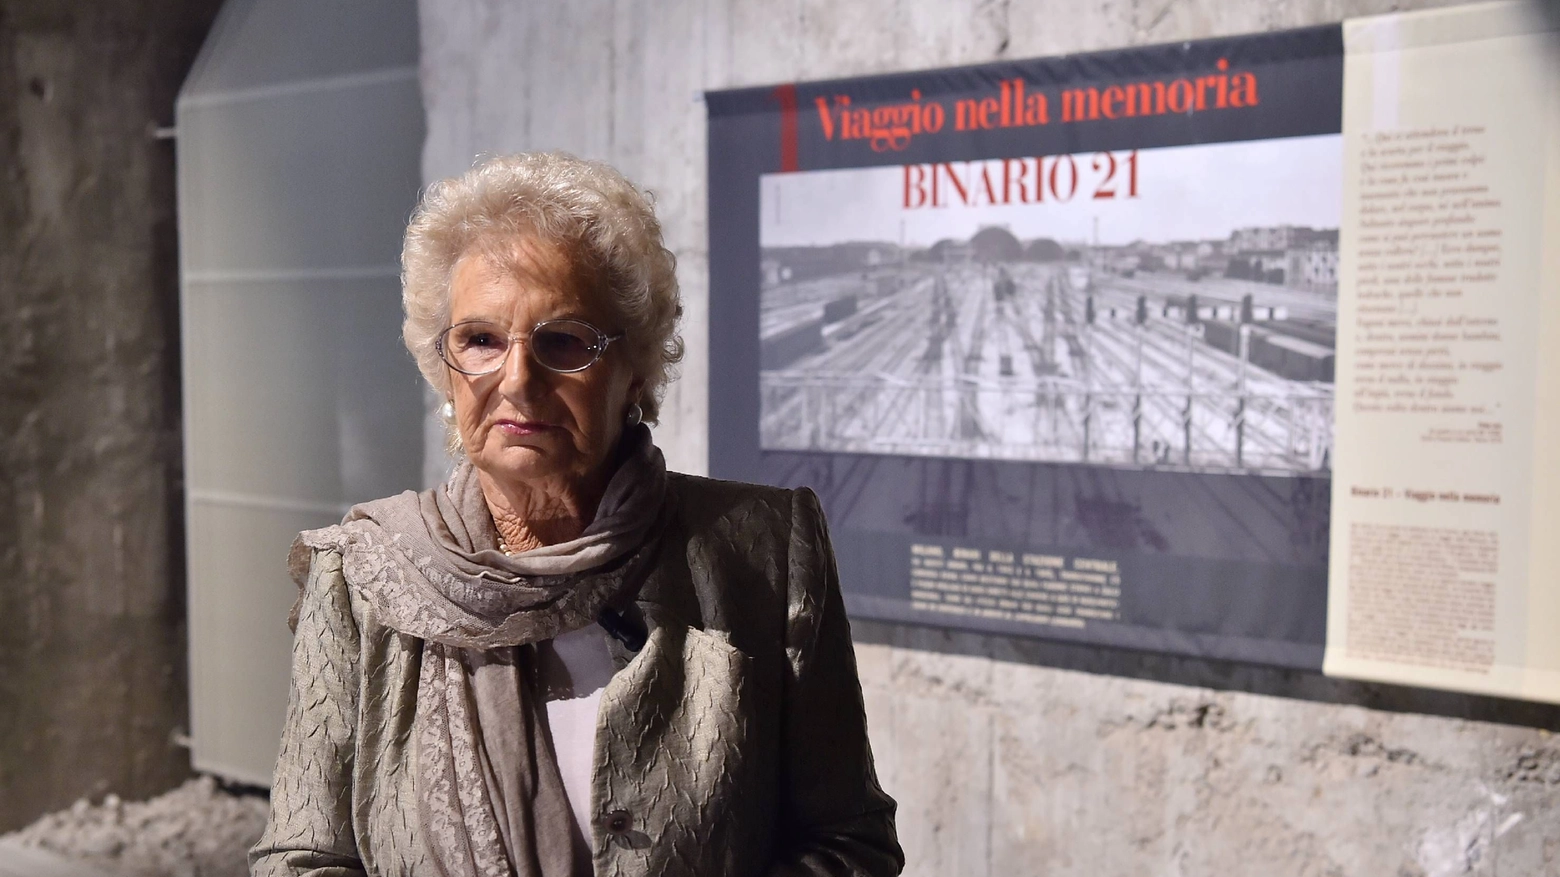 Liliana Segre all' interno del Memoriale della Shoa al Binario 21, a Milano